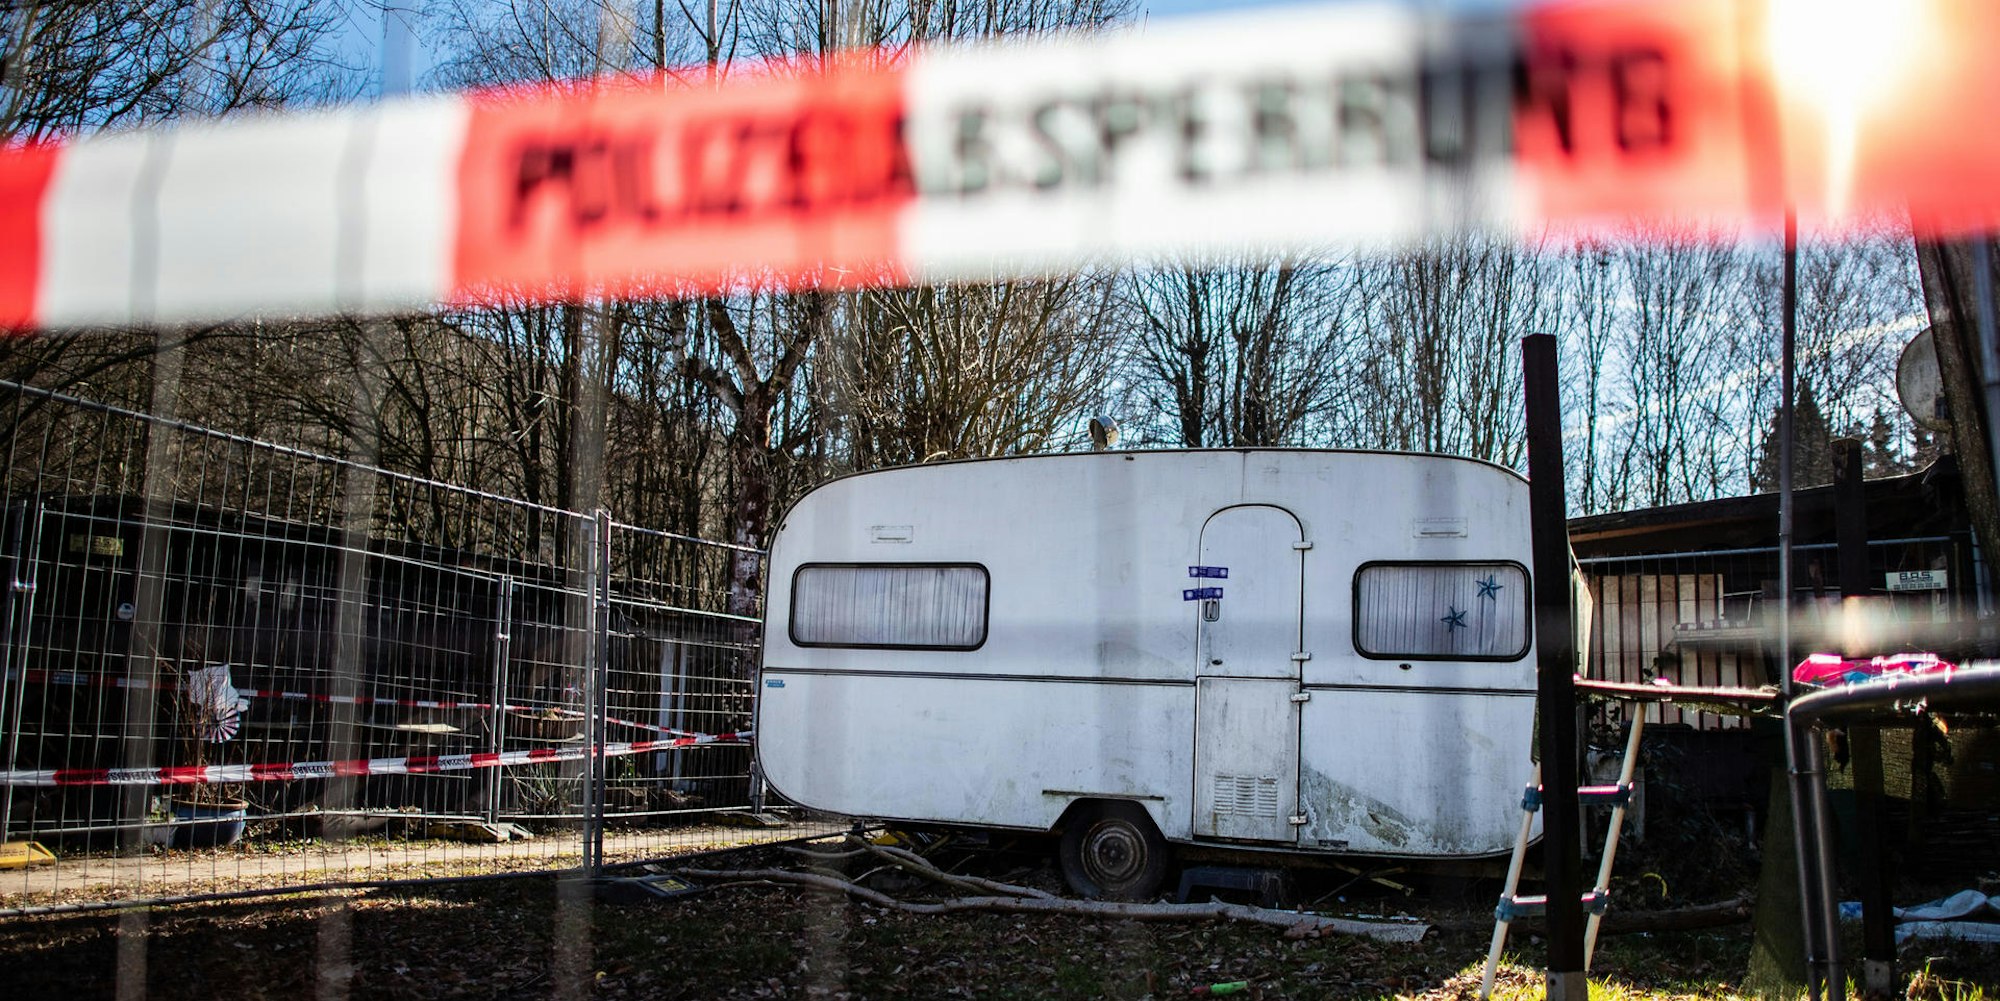 Auf dem Campingplatz Eichwald in der inzwischen eingezäunten Parzelle des mutmaßlichen Täters steht der versiegelte Campingwagen.